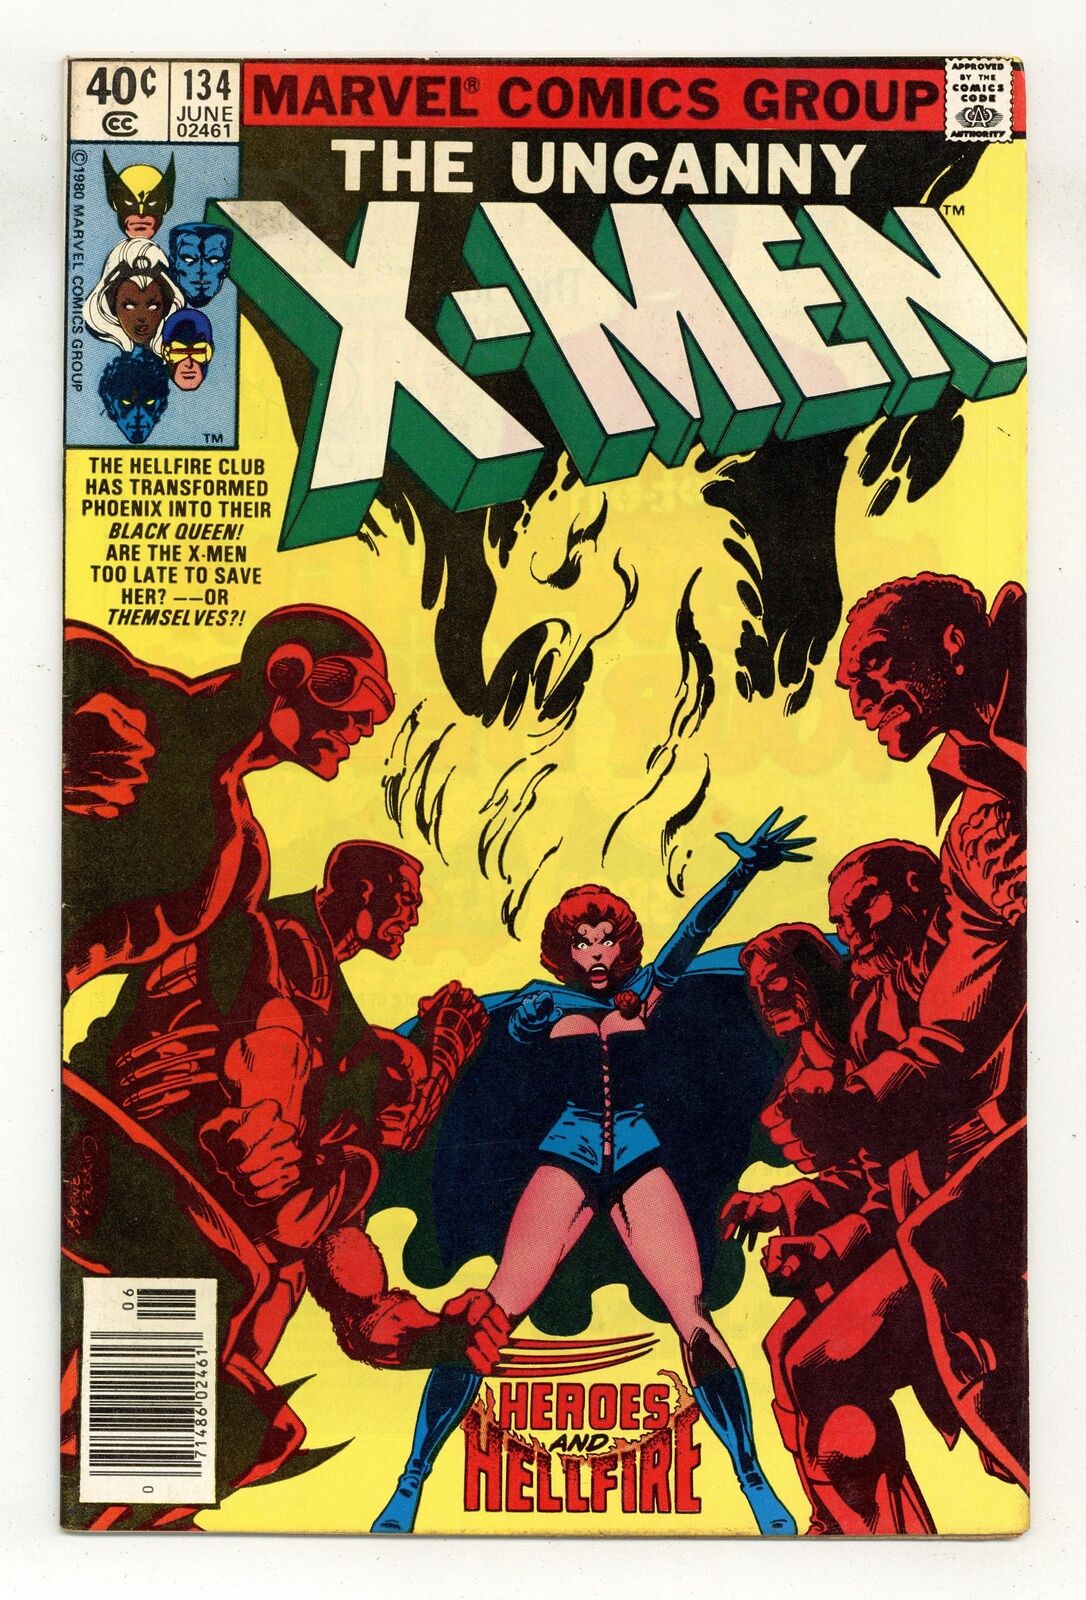 Uncanny X-Men #134N Newsstand Variant VG/FN 5.0 1980